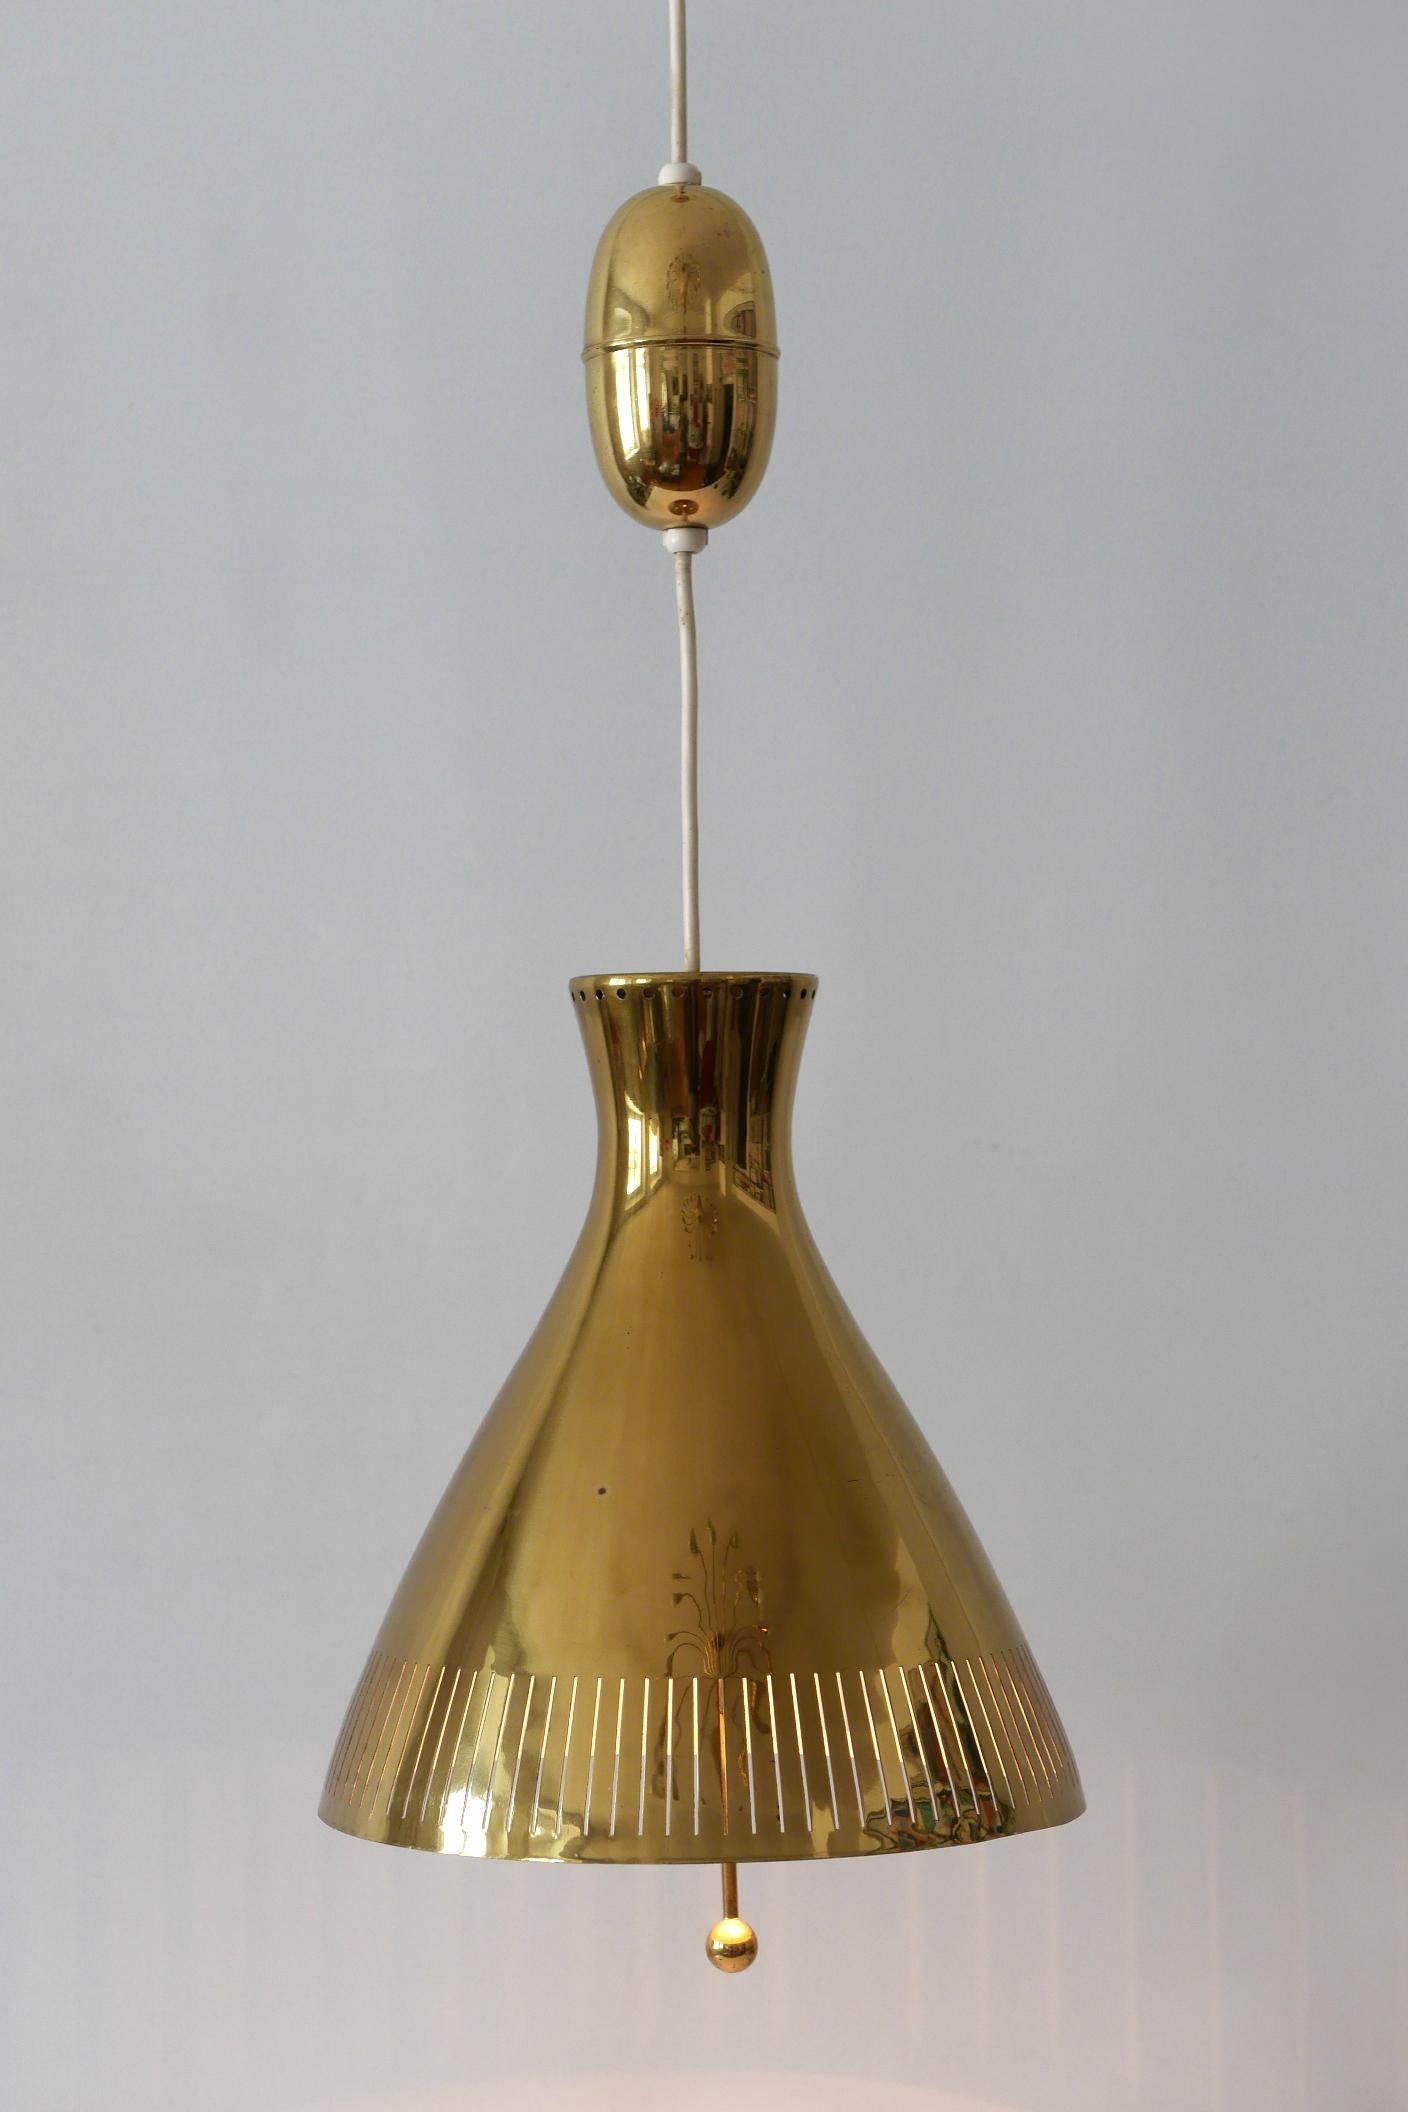 Polished Midcentury Counterweight Brass Pendant Lamp by Vereinigte Werkstätten, 1960s